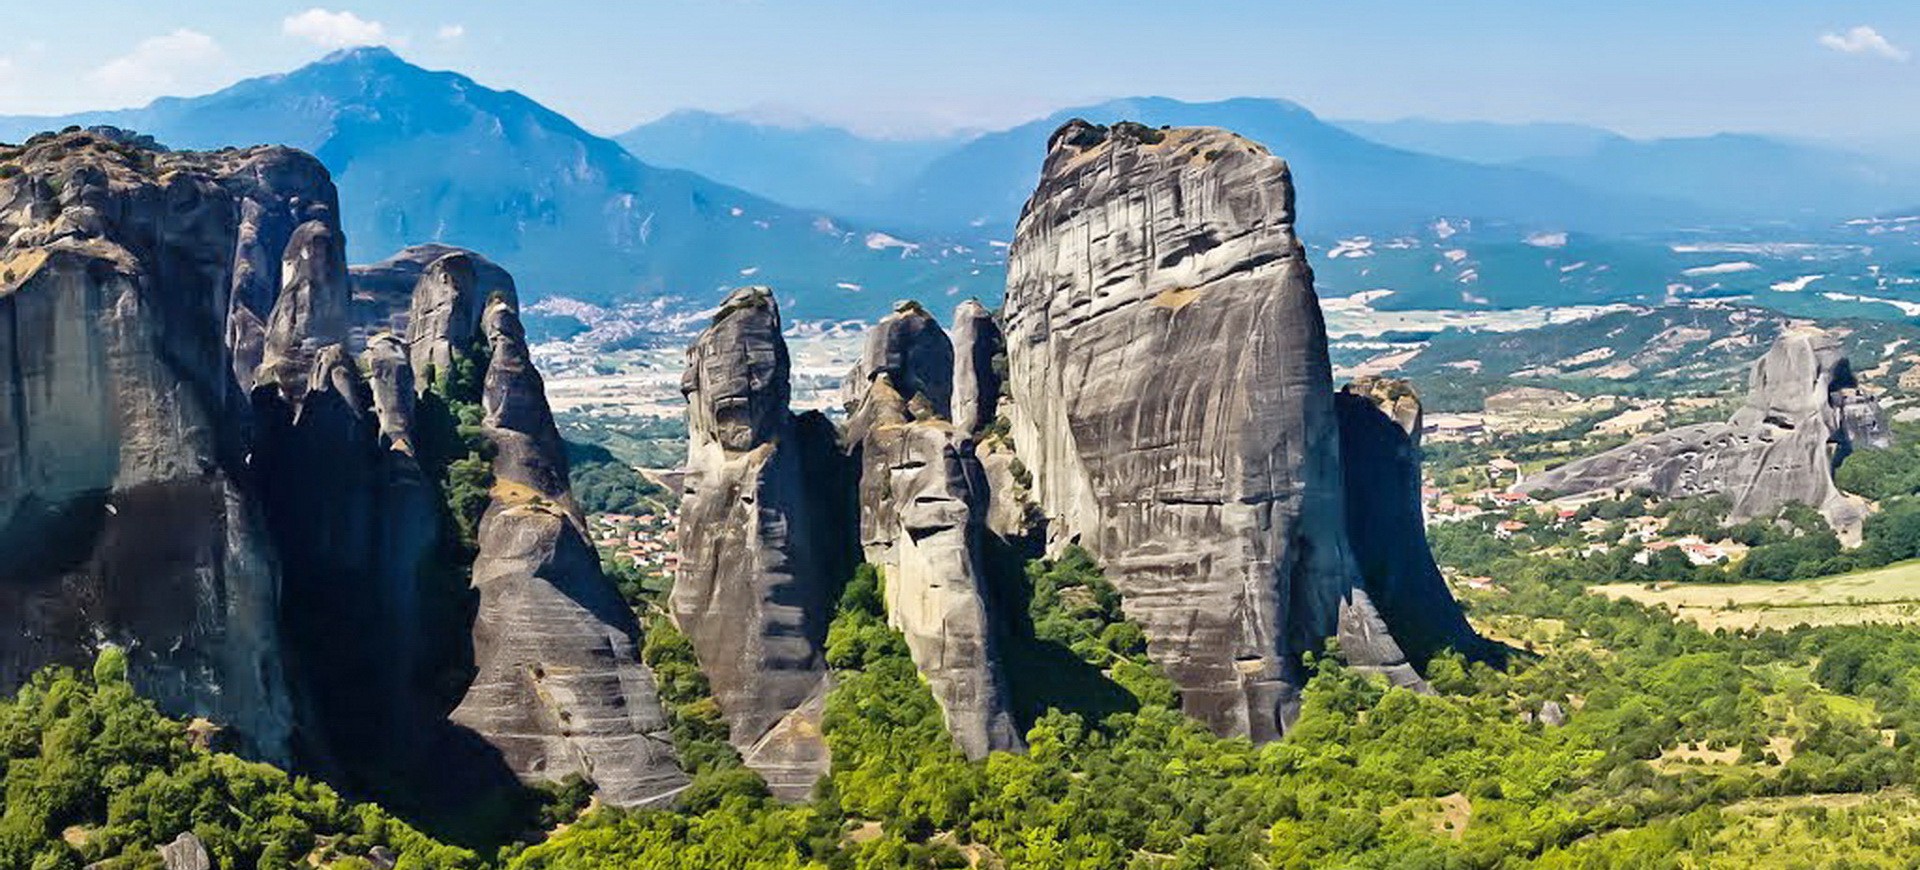 Montagnes dans les Météores en Grèce